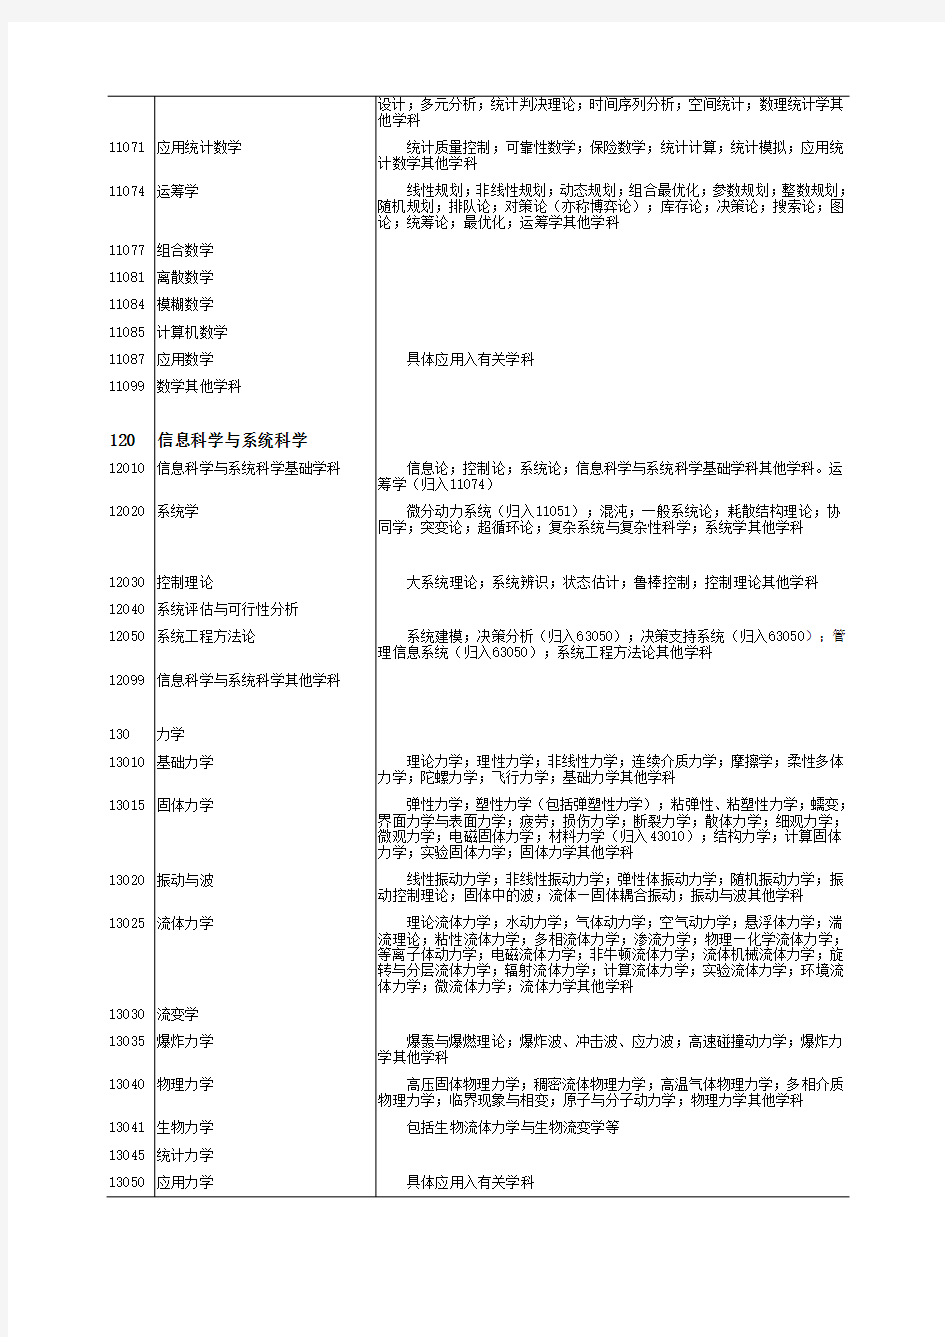 中华人民共和国学科分类与代码简表(国家标准GBT 13745-2009)